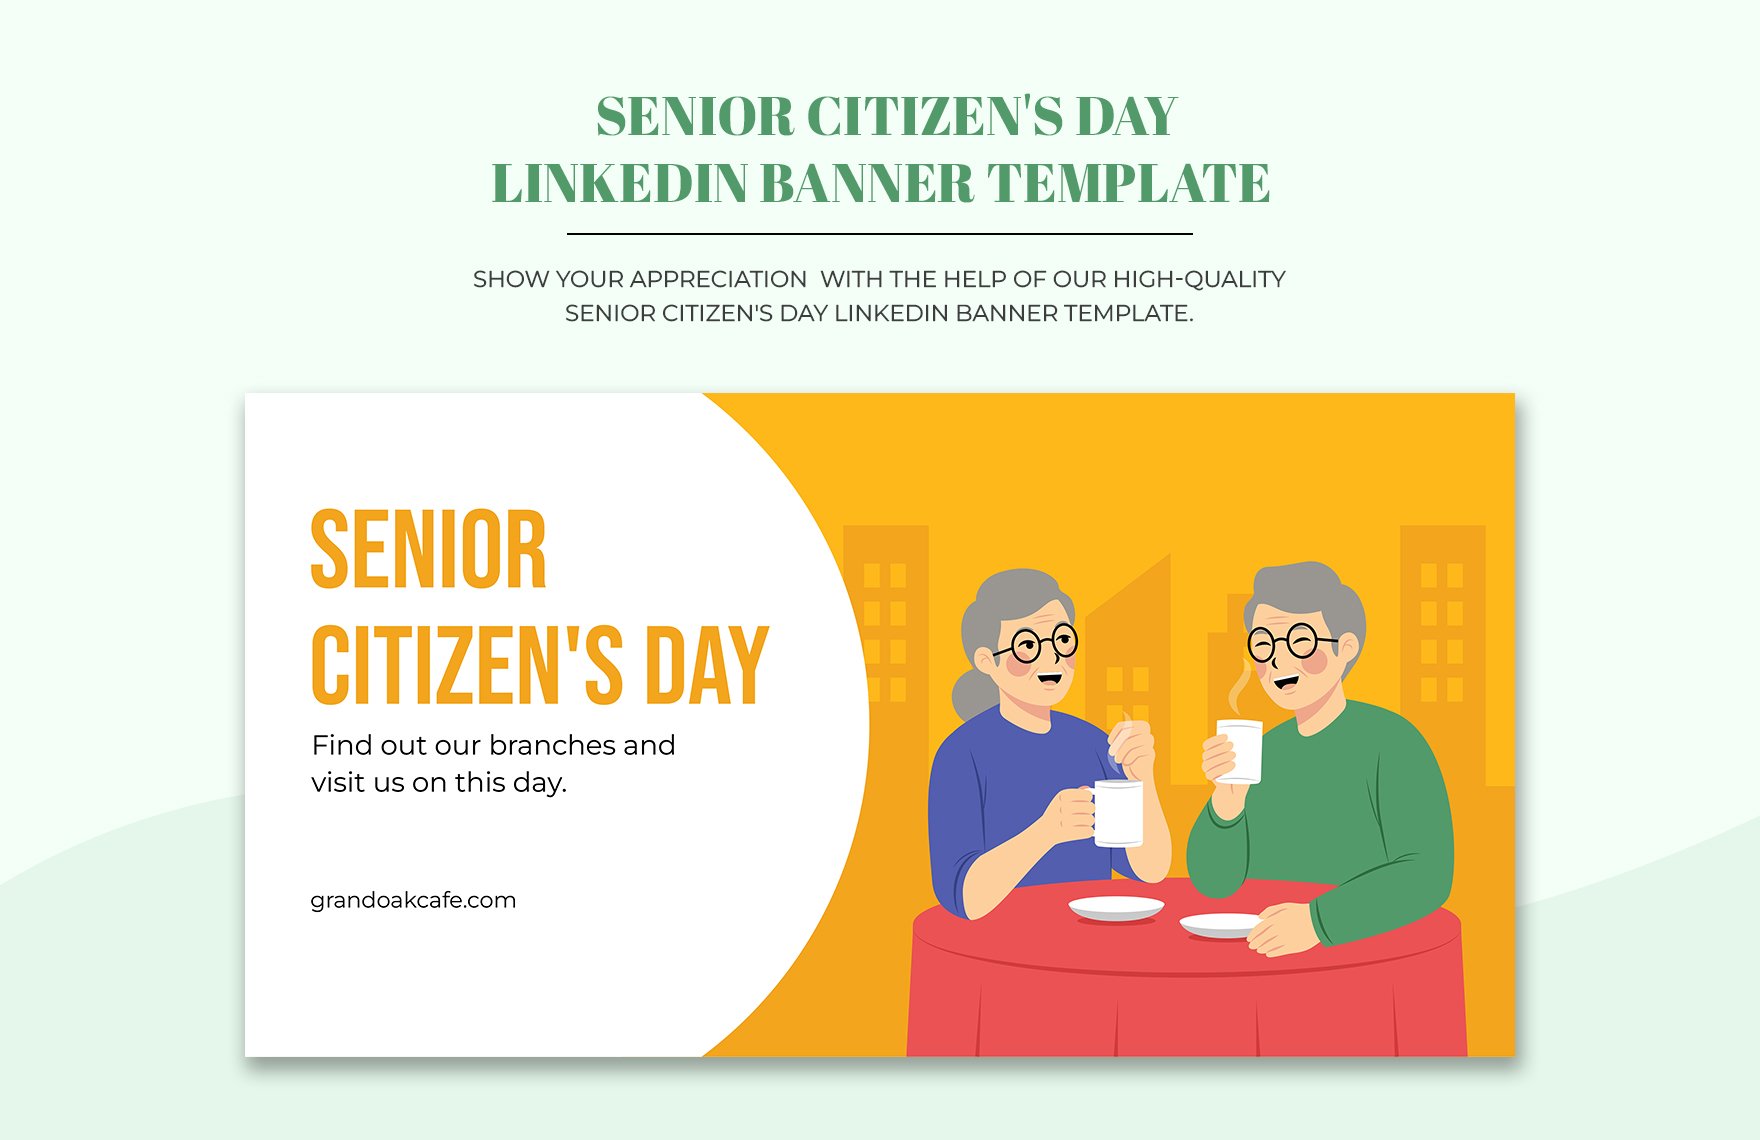 Senior Citizen's Day LinkedIn Banner Template